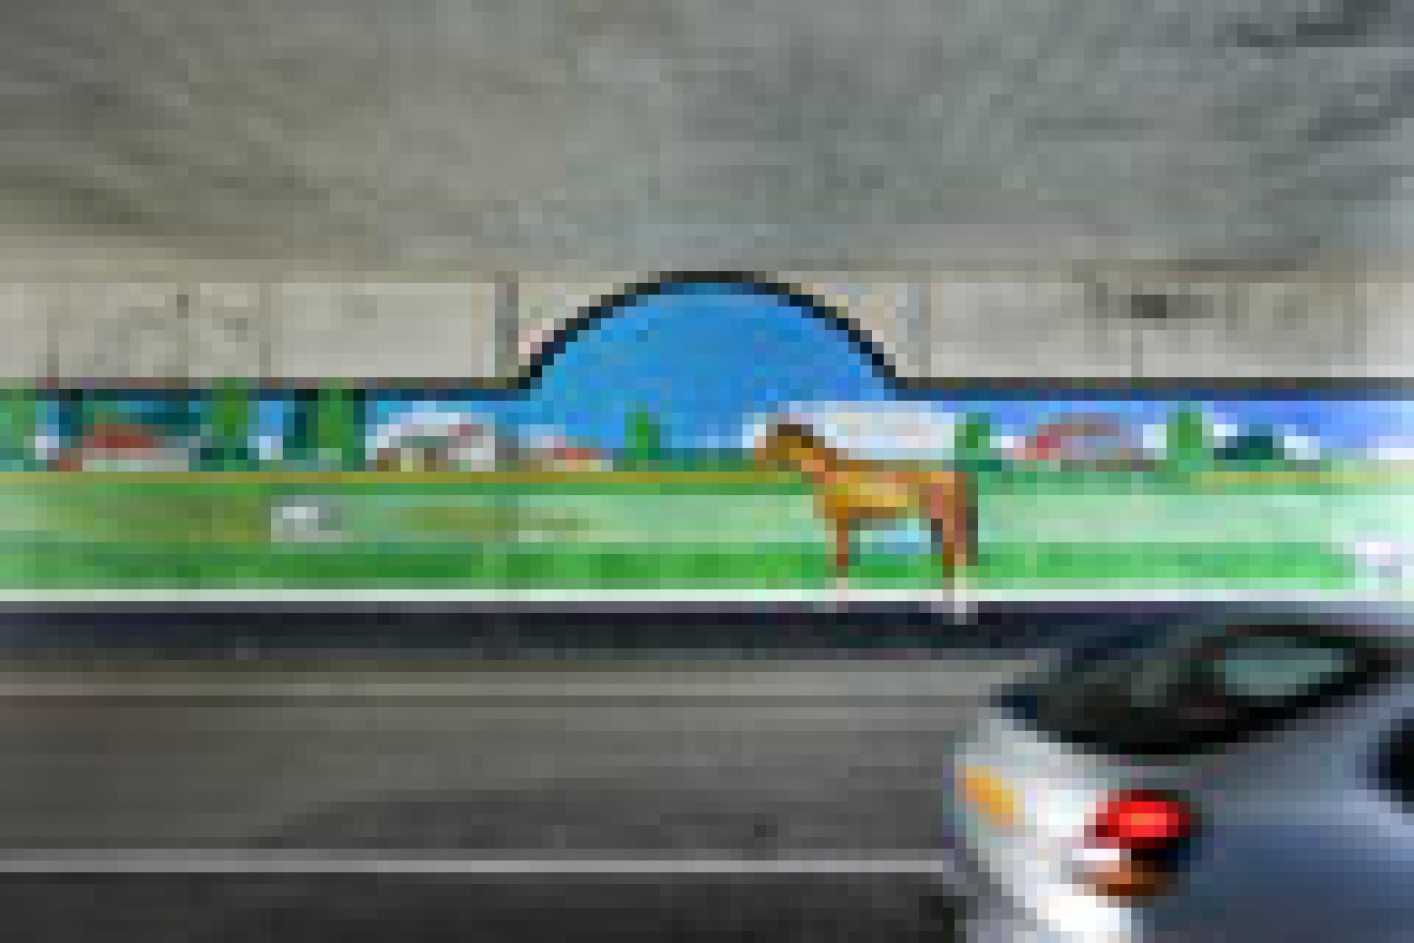 Verlangen naar landschap - Muurschildering in tunnel, Groningen